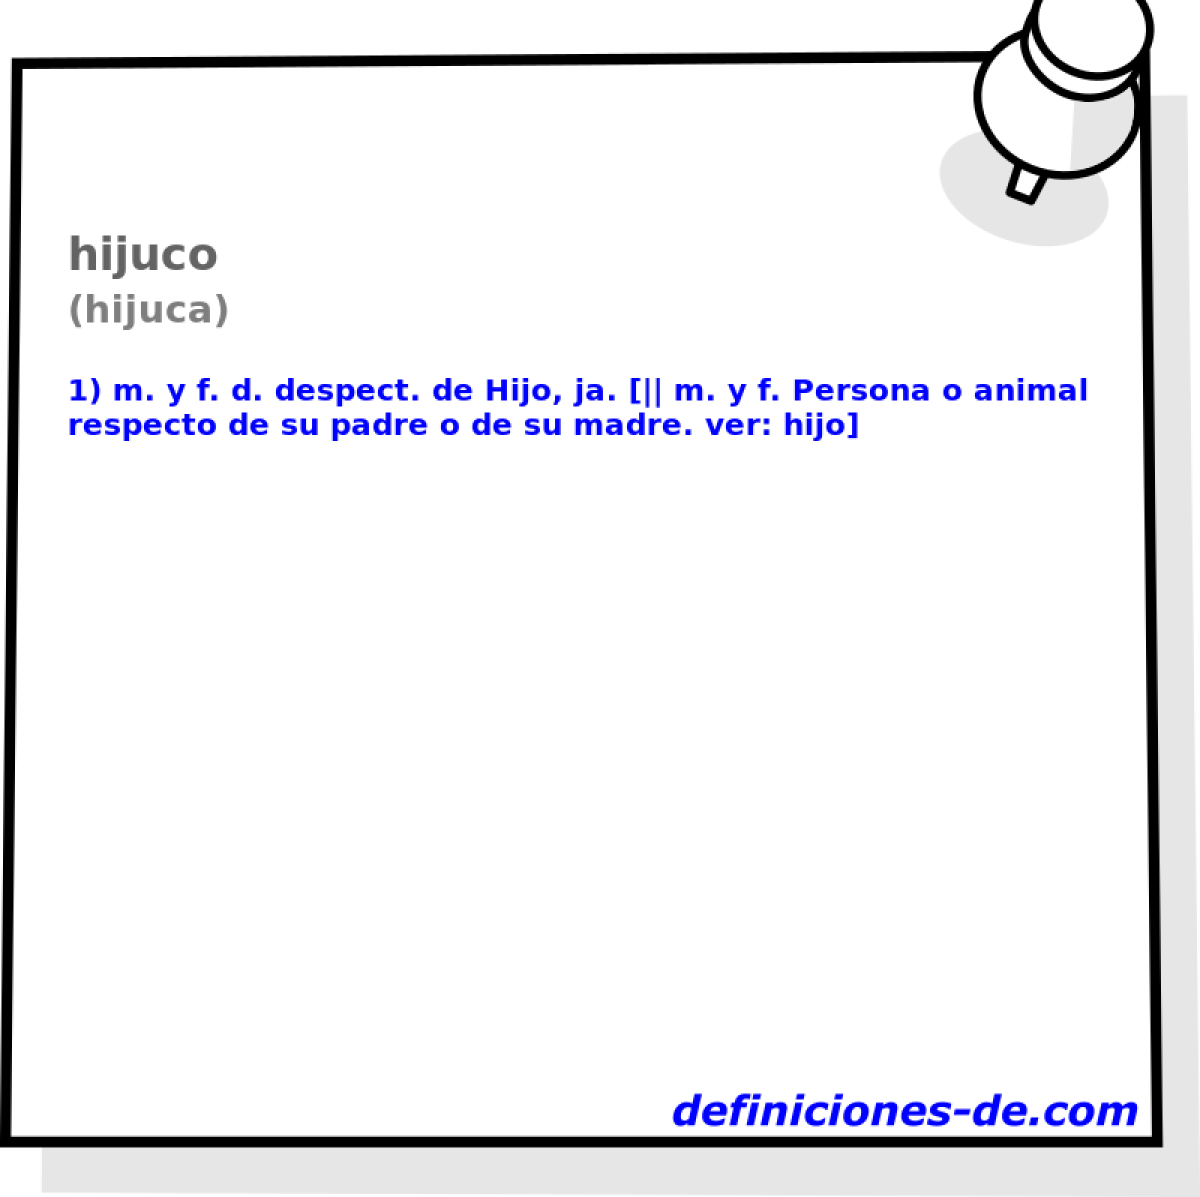 hijuco (hijuca)